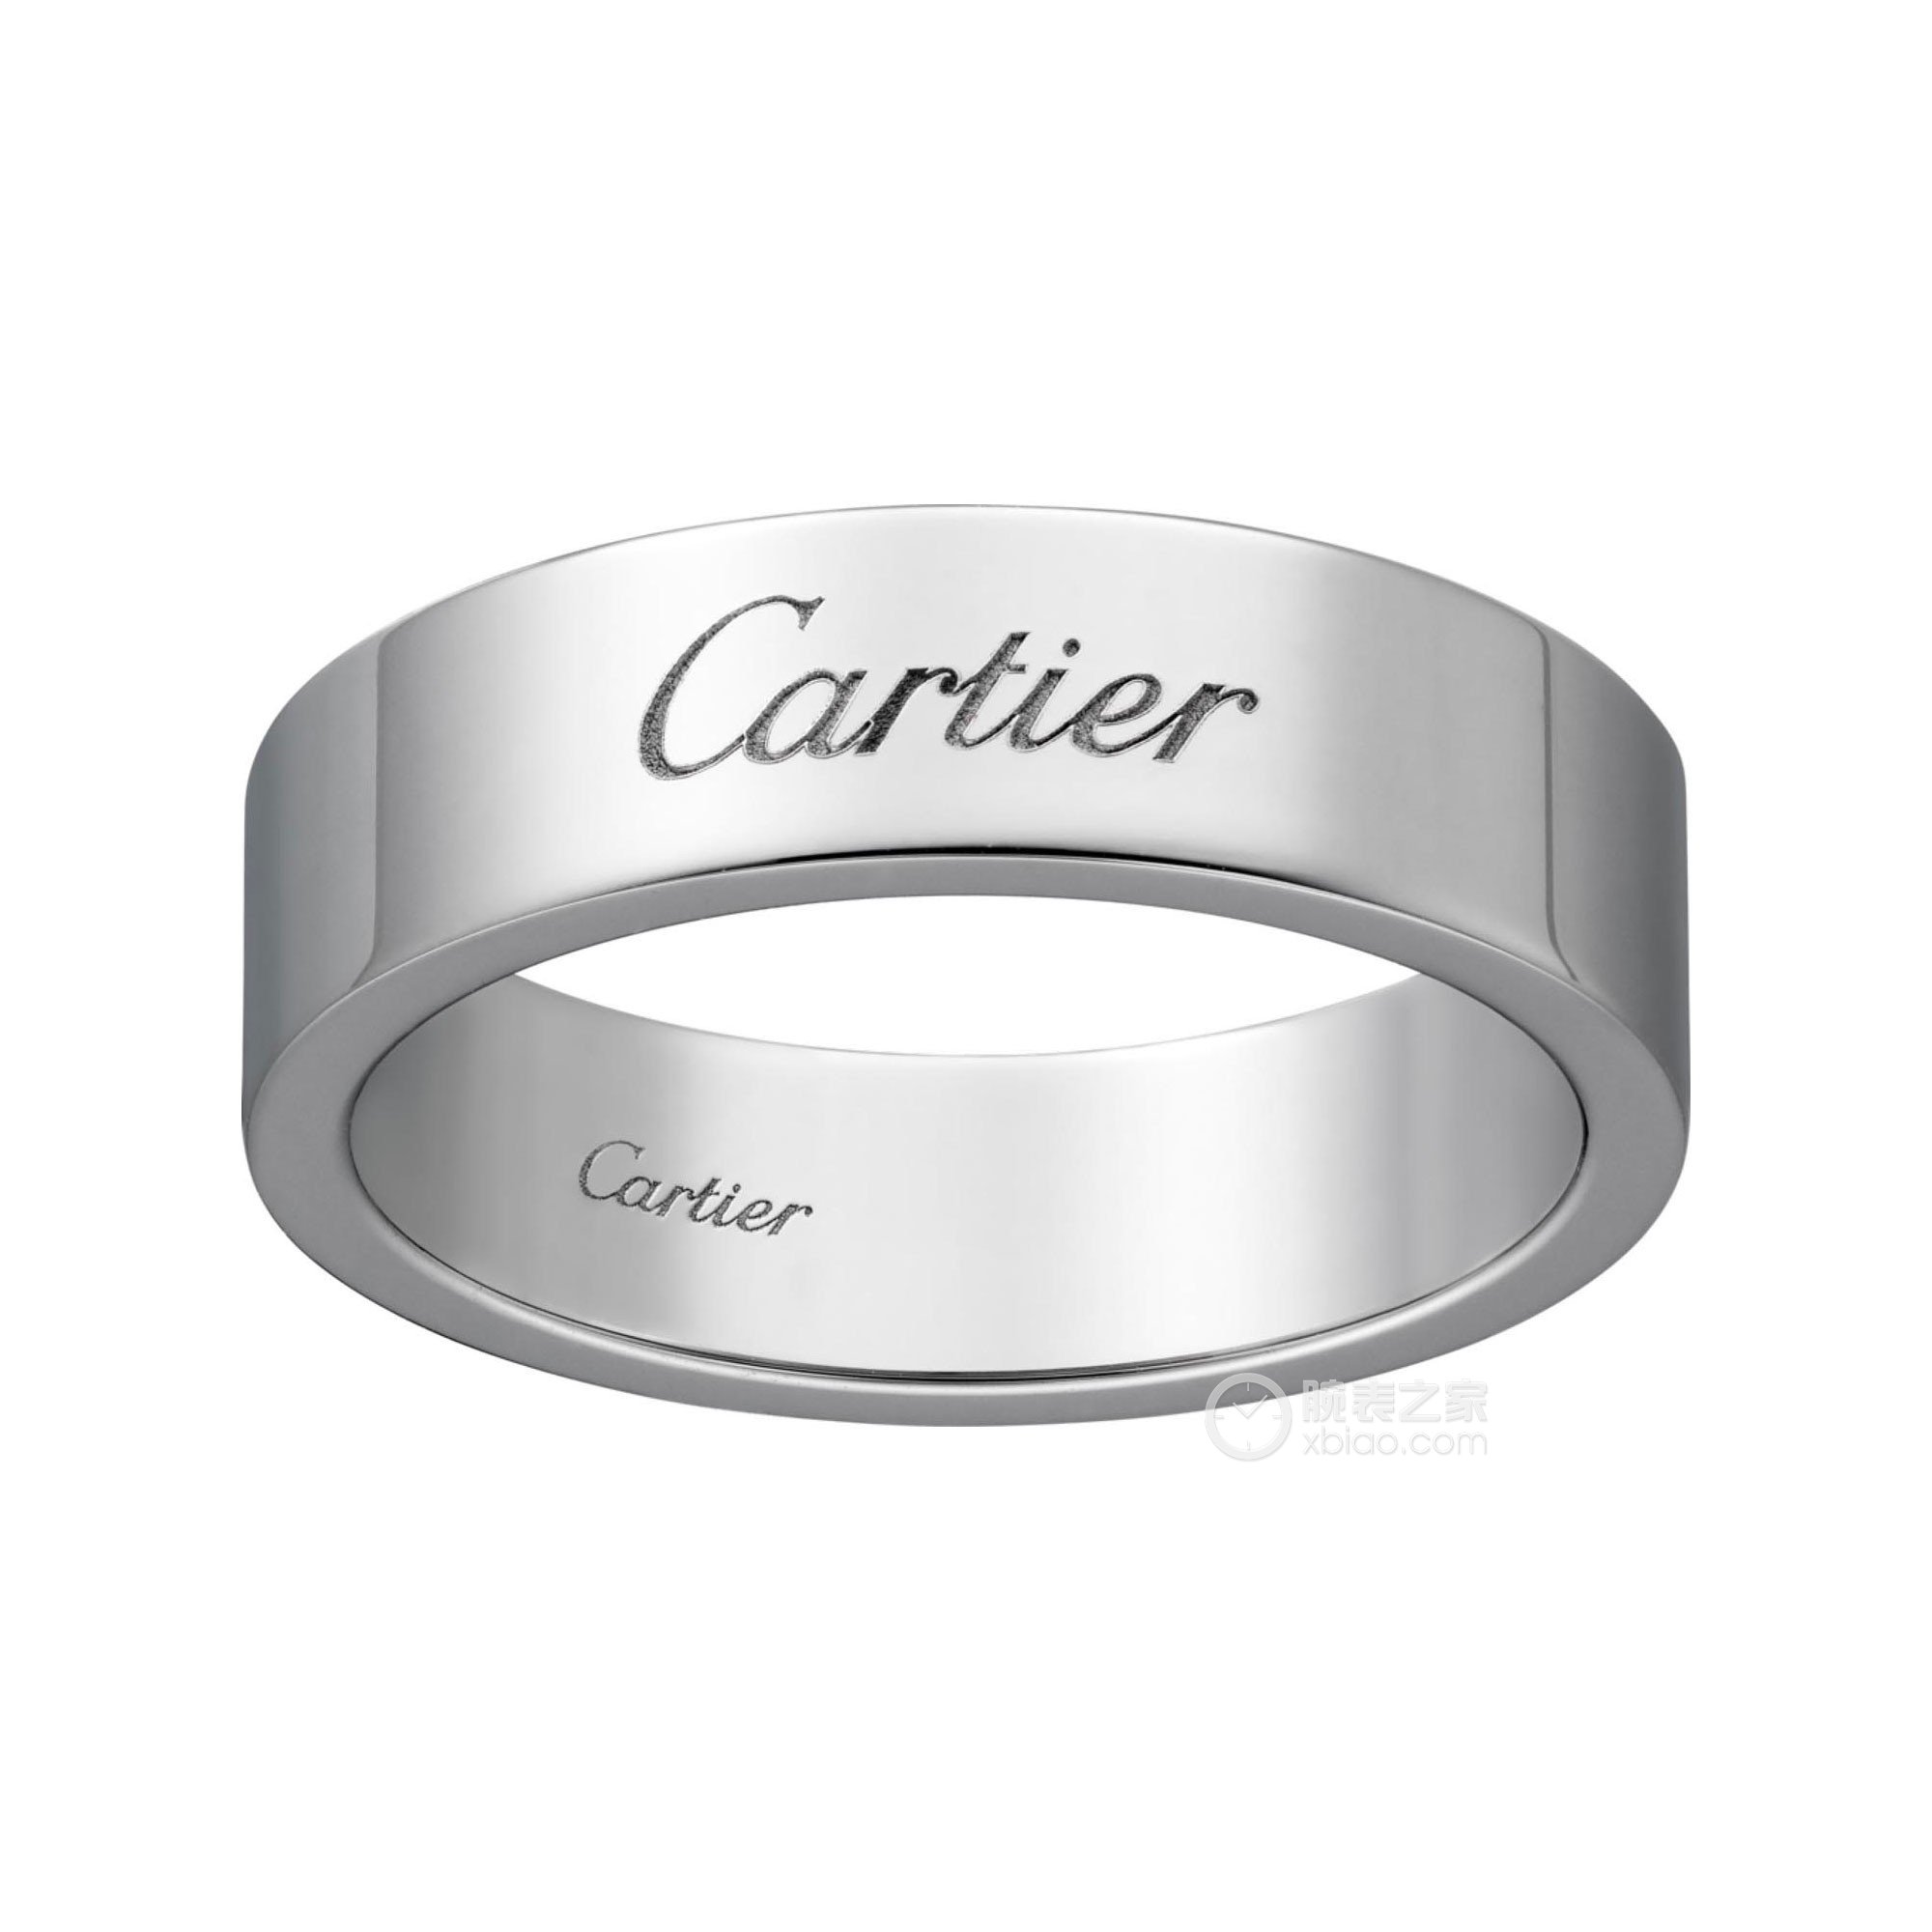 卡地亚C DE CARTIER系列B4210100戒指